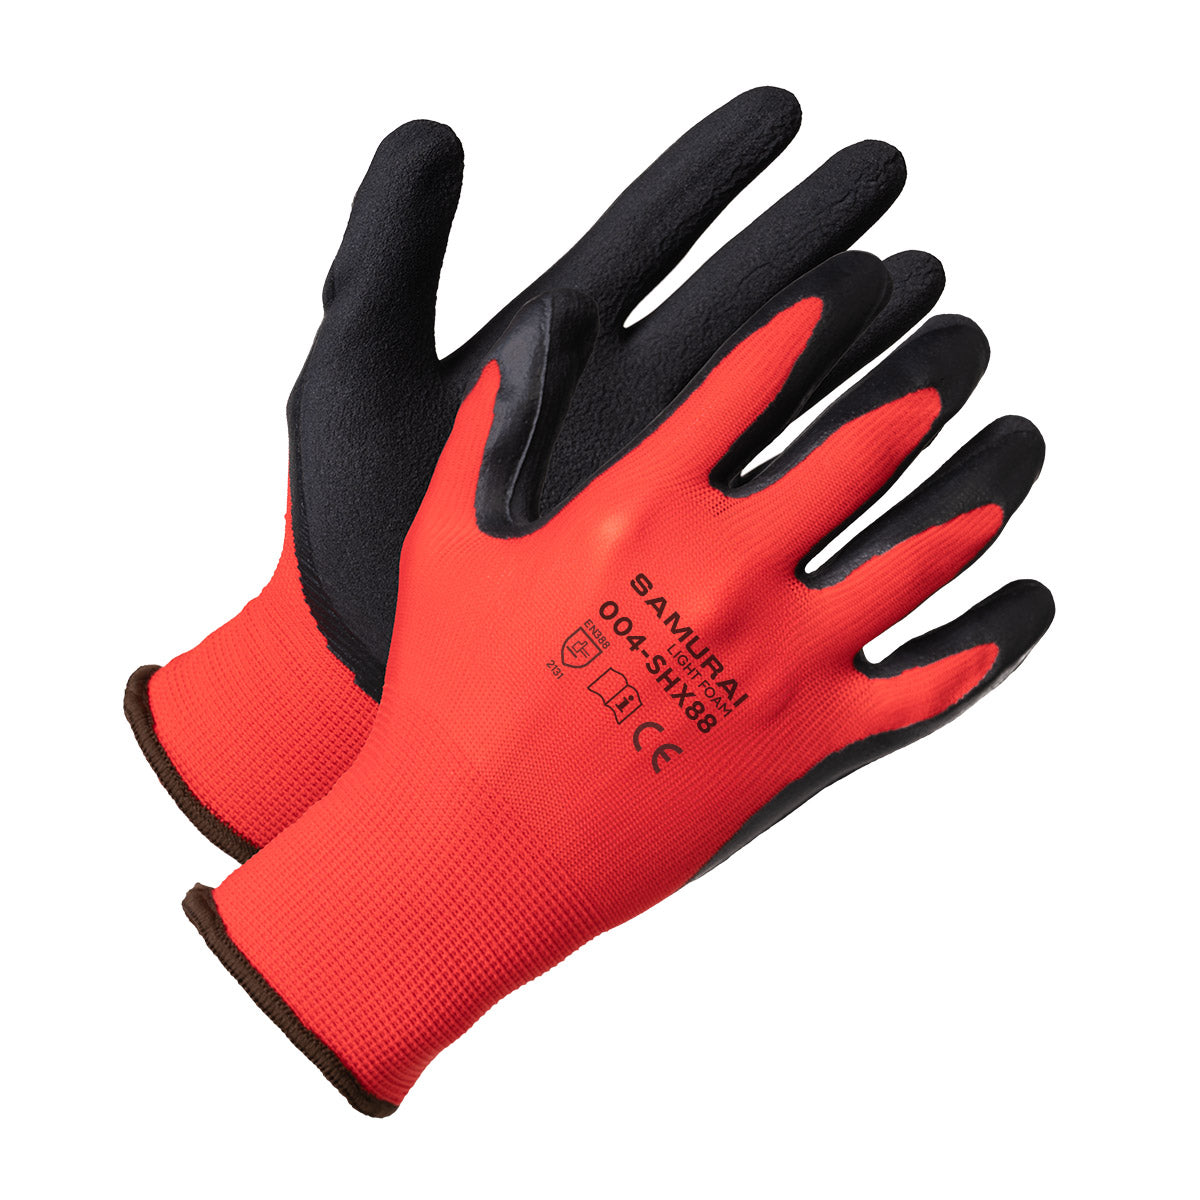 "Samurai Light Foam" High Dexterity Work Gloves (Retail Version)